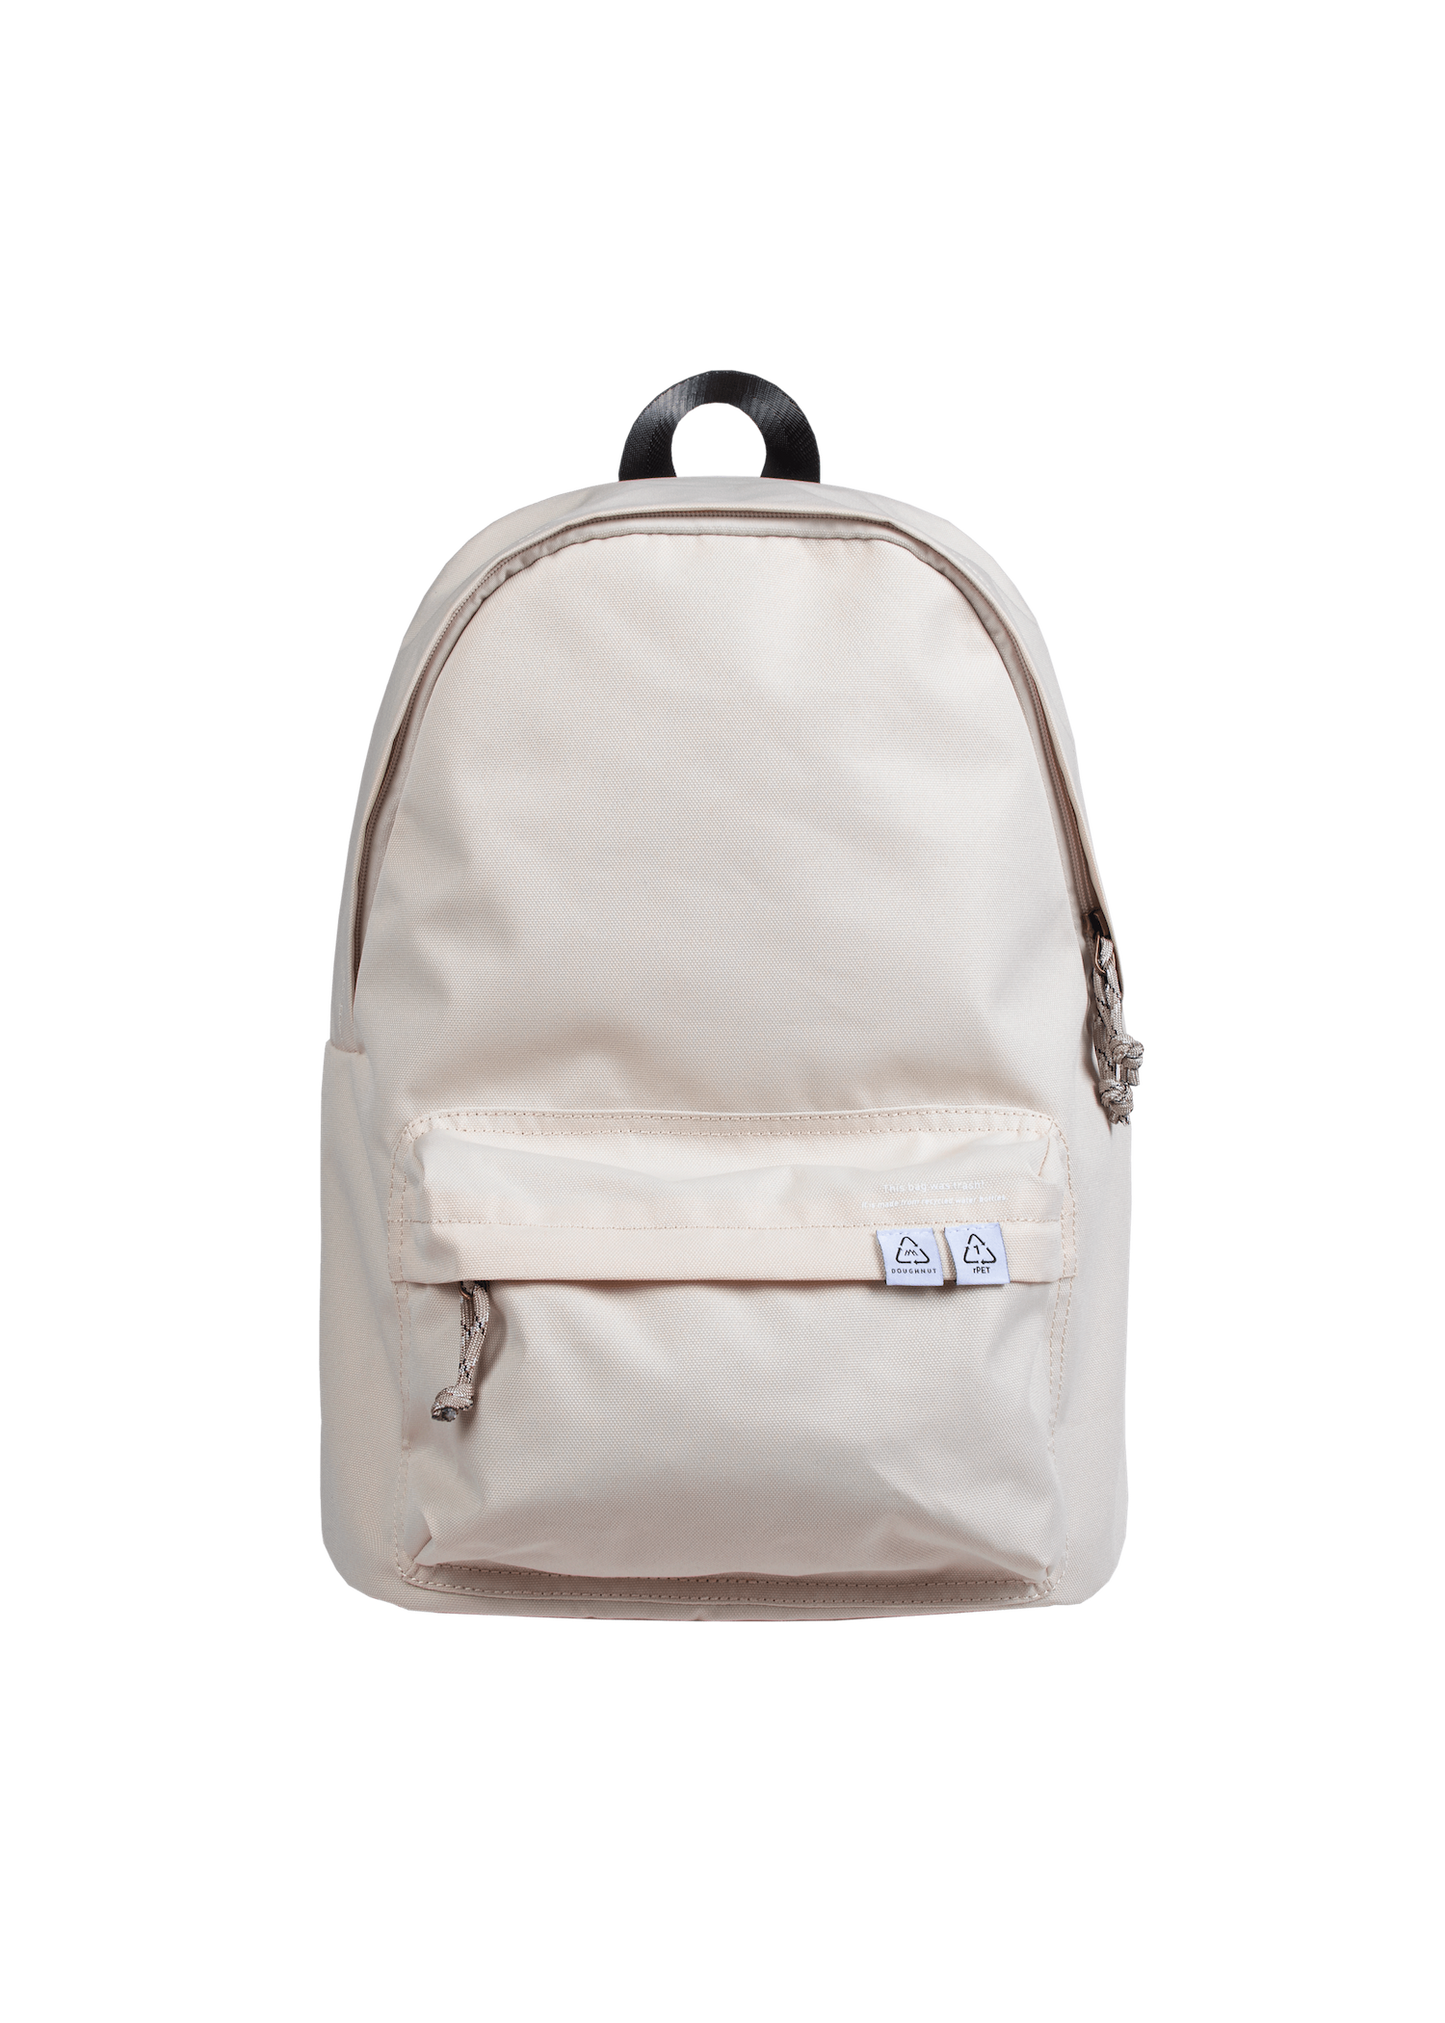 Plus One Reborn Series Backpack